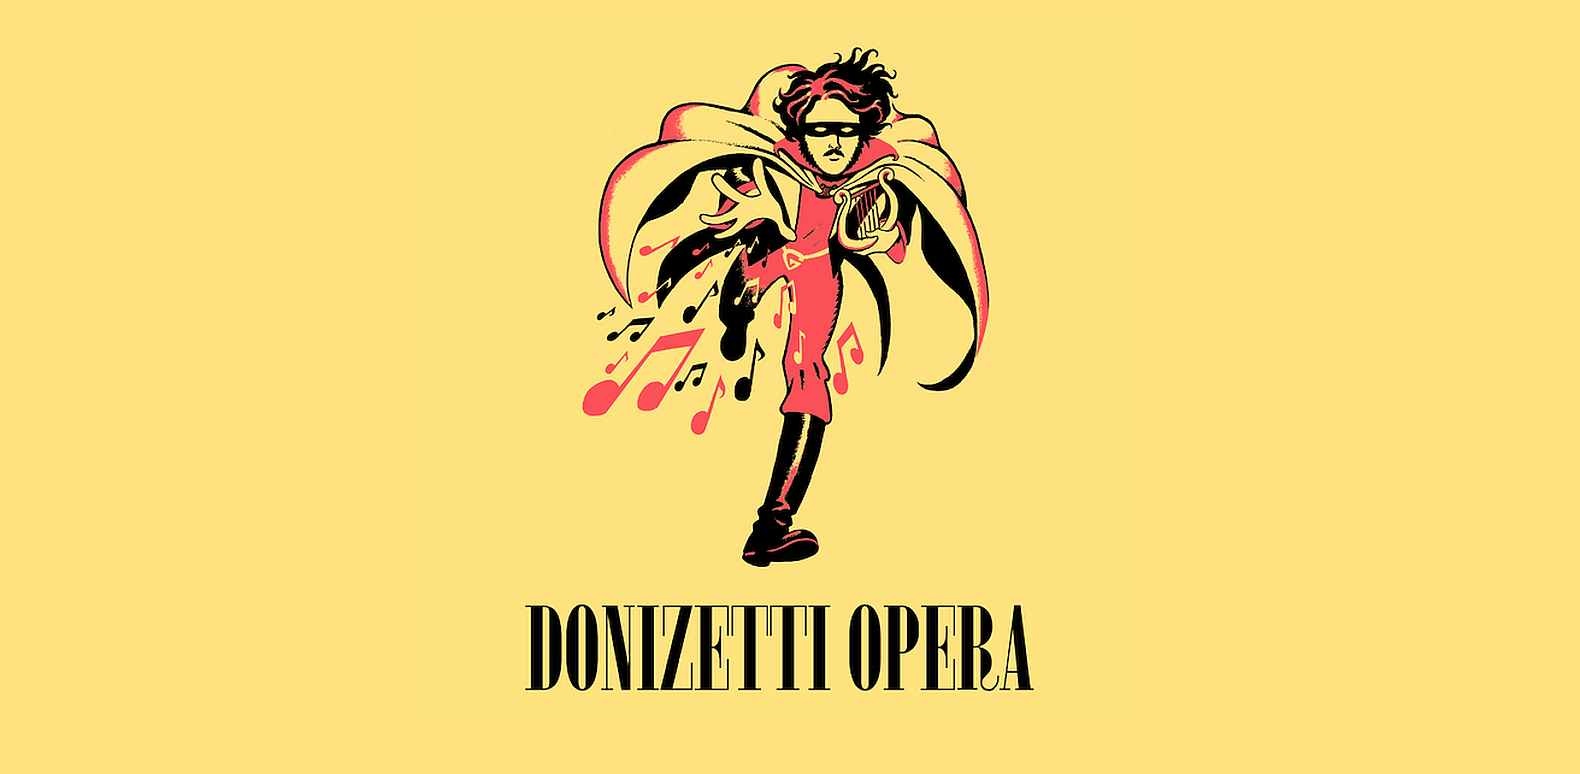 Immagine che raffigura Donizetti Opera Festival 